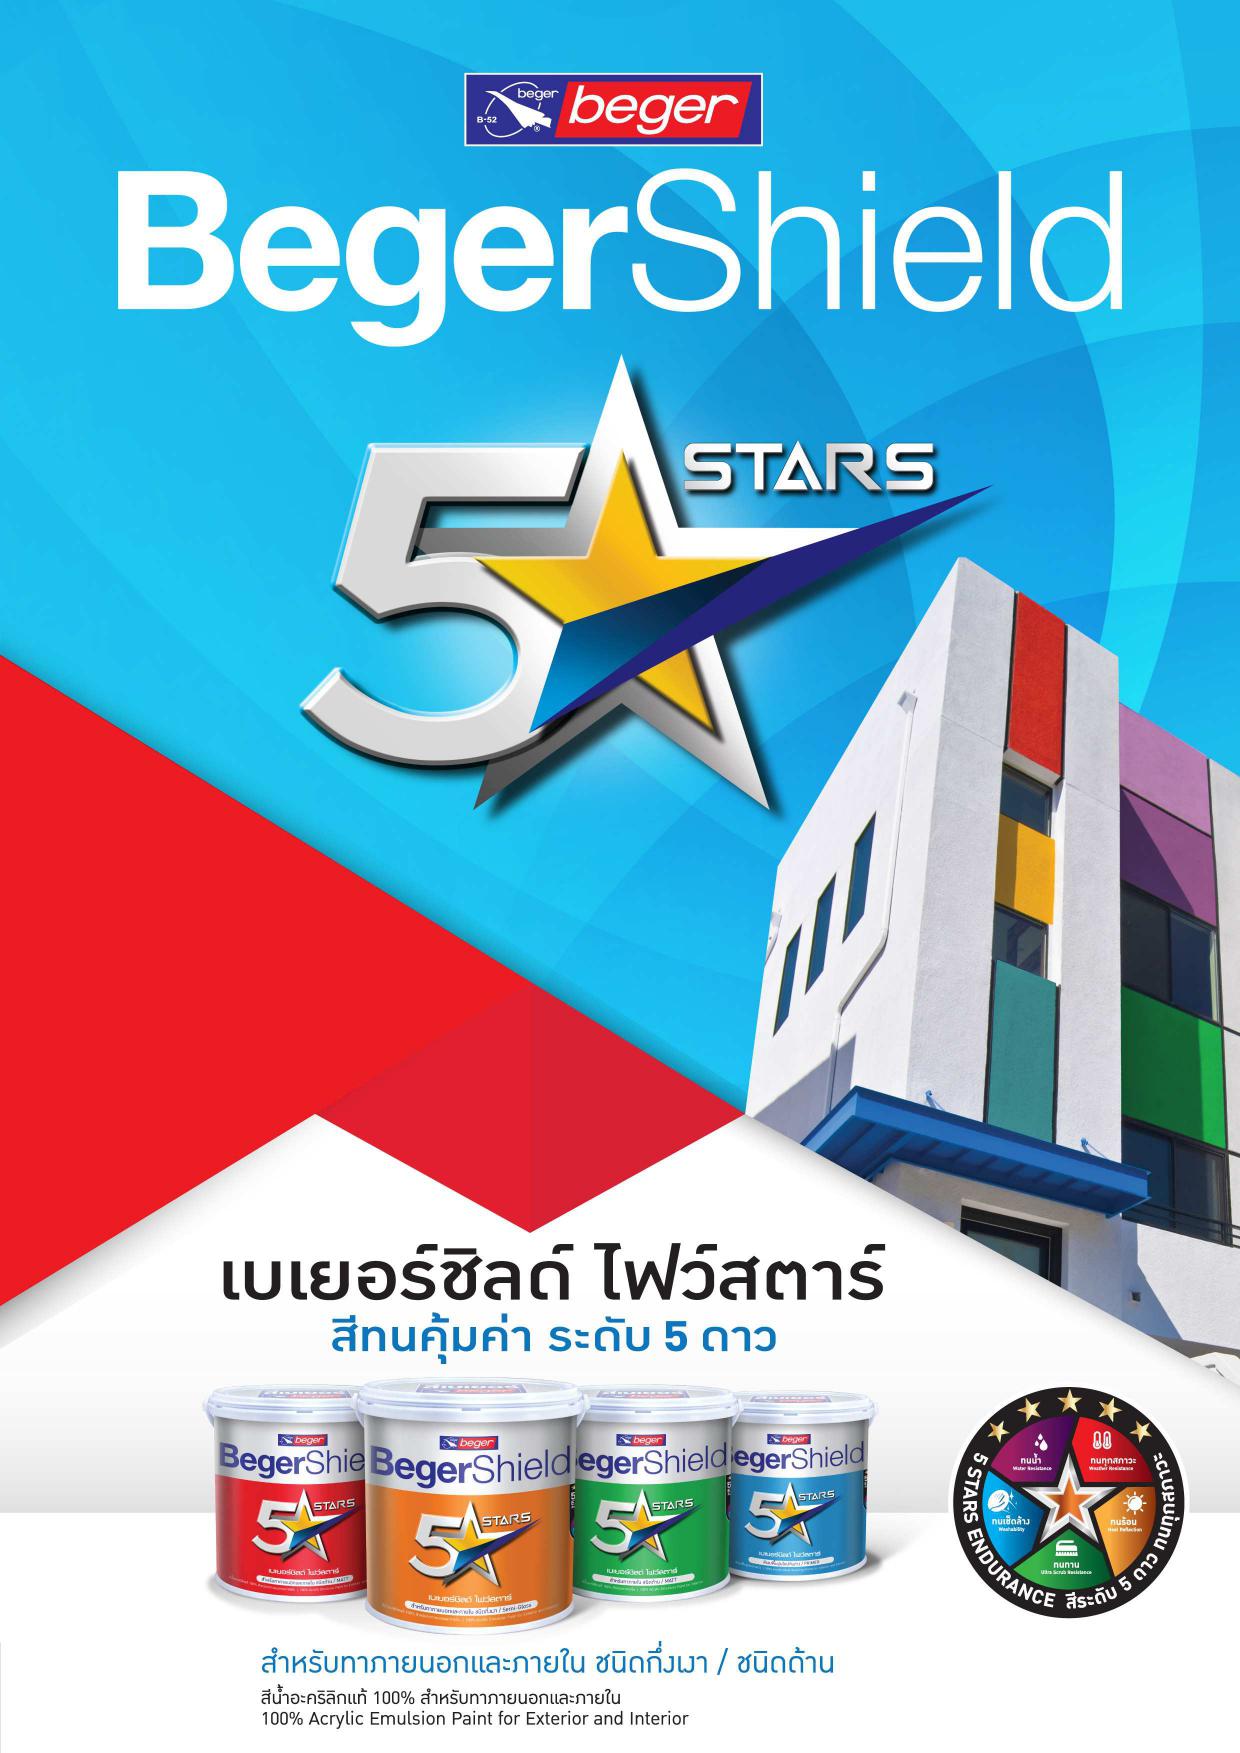 เบเยอร์ชิลด์ ไฟว์สตาร์ ชนิดกึ่งเงา / BegerShield 5 Stars Semi-gloss